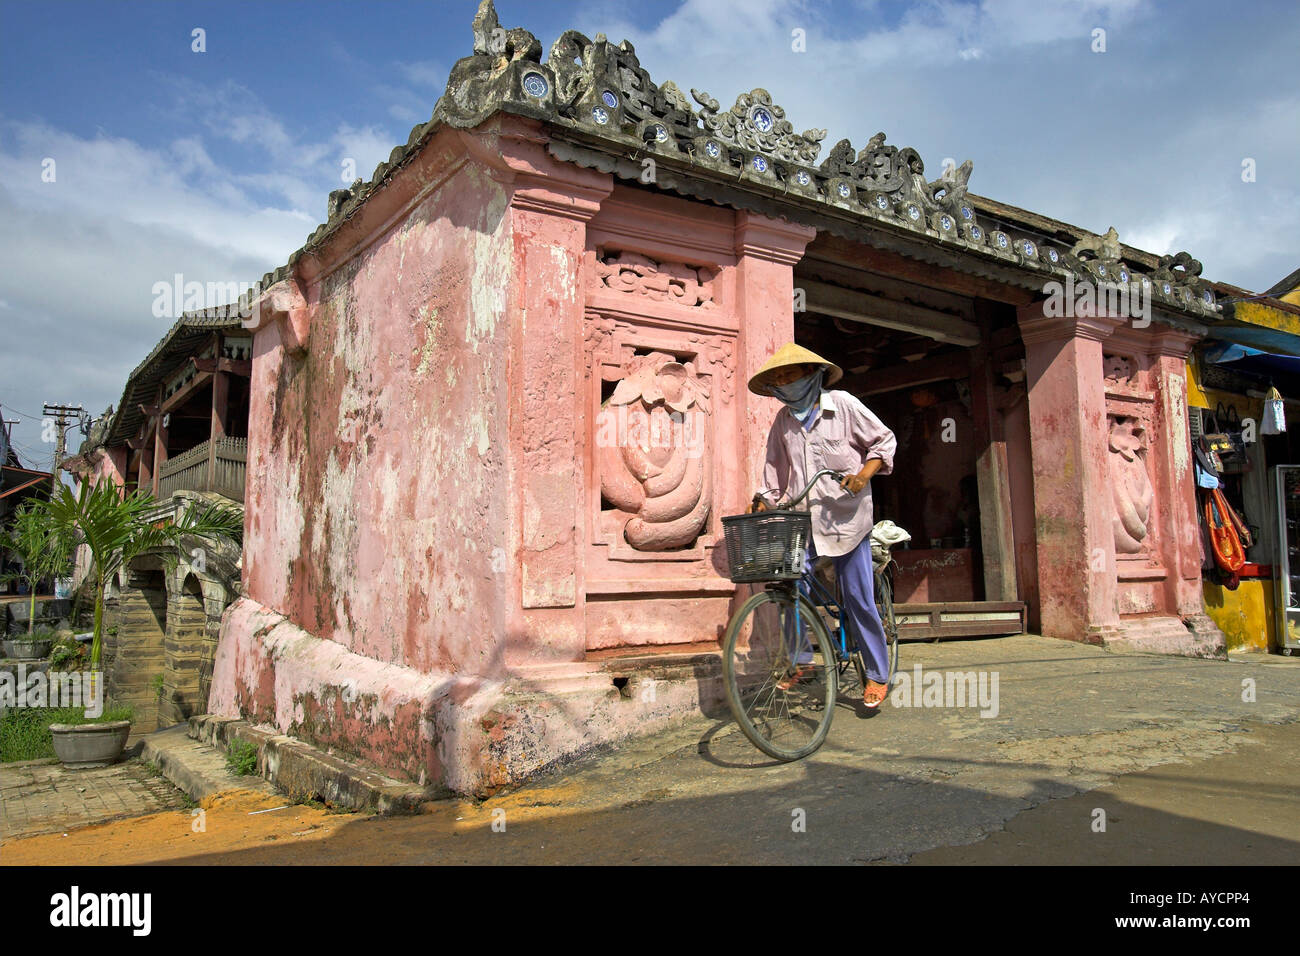 Mujer sombrero cónico en bicicleta sale del siglo XVII, el puente cubierto japonés de Hoi An ciudad histórica Vietnam Foto de stock